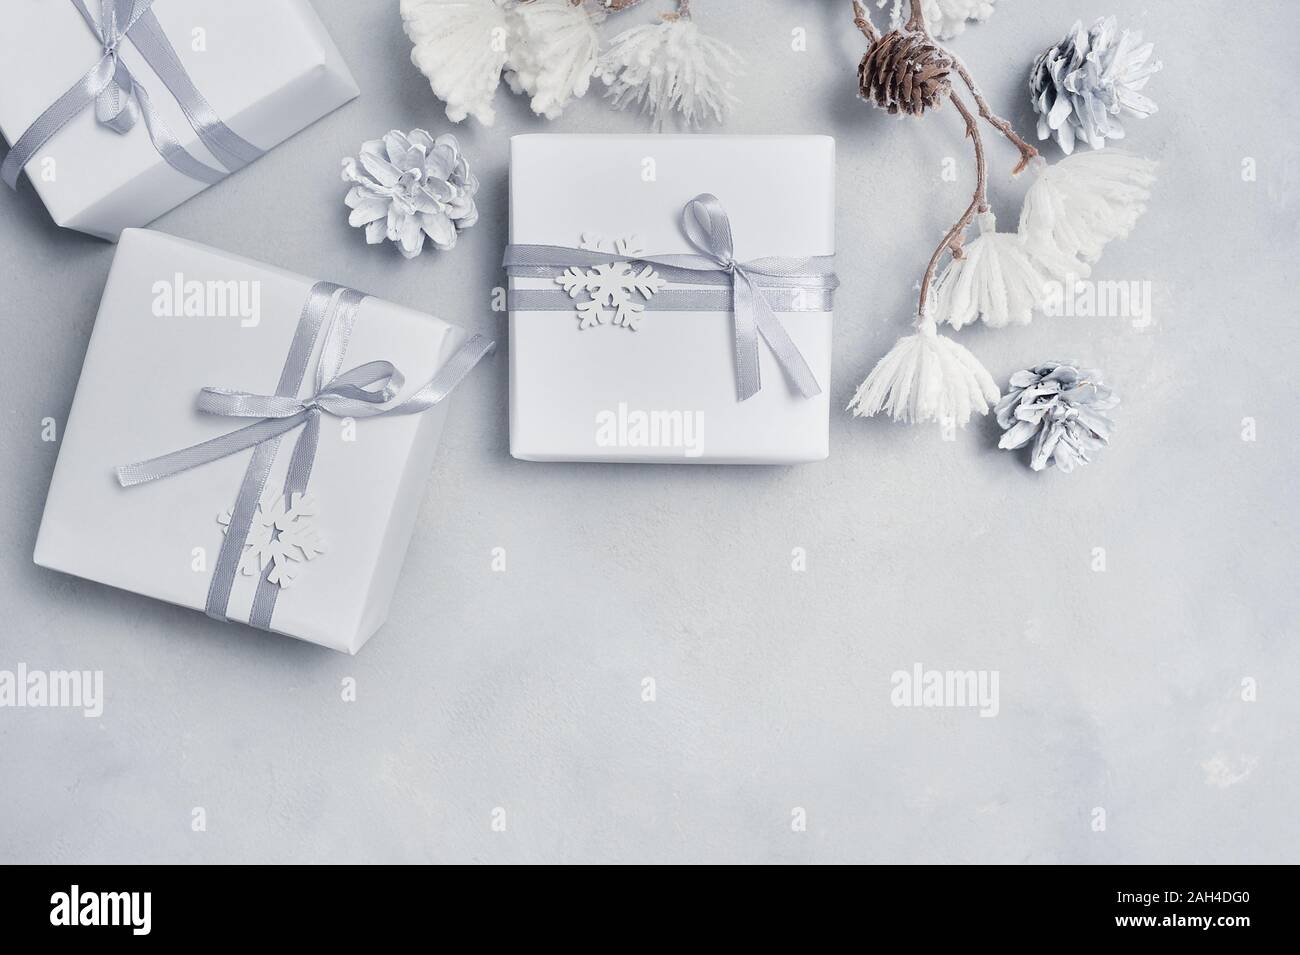 La conception de la frontière une carte de vœux de Noël avec boîte-cadeau de Noël, des cônes, des flocons avec place pour votre texte. Décorations sur un fond en béton blanc Banque D'Images